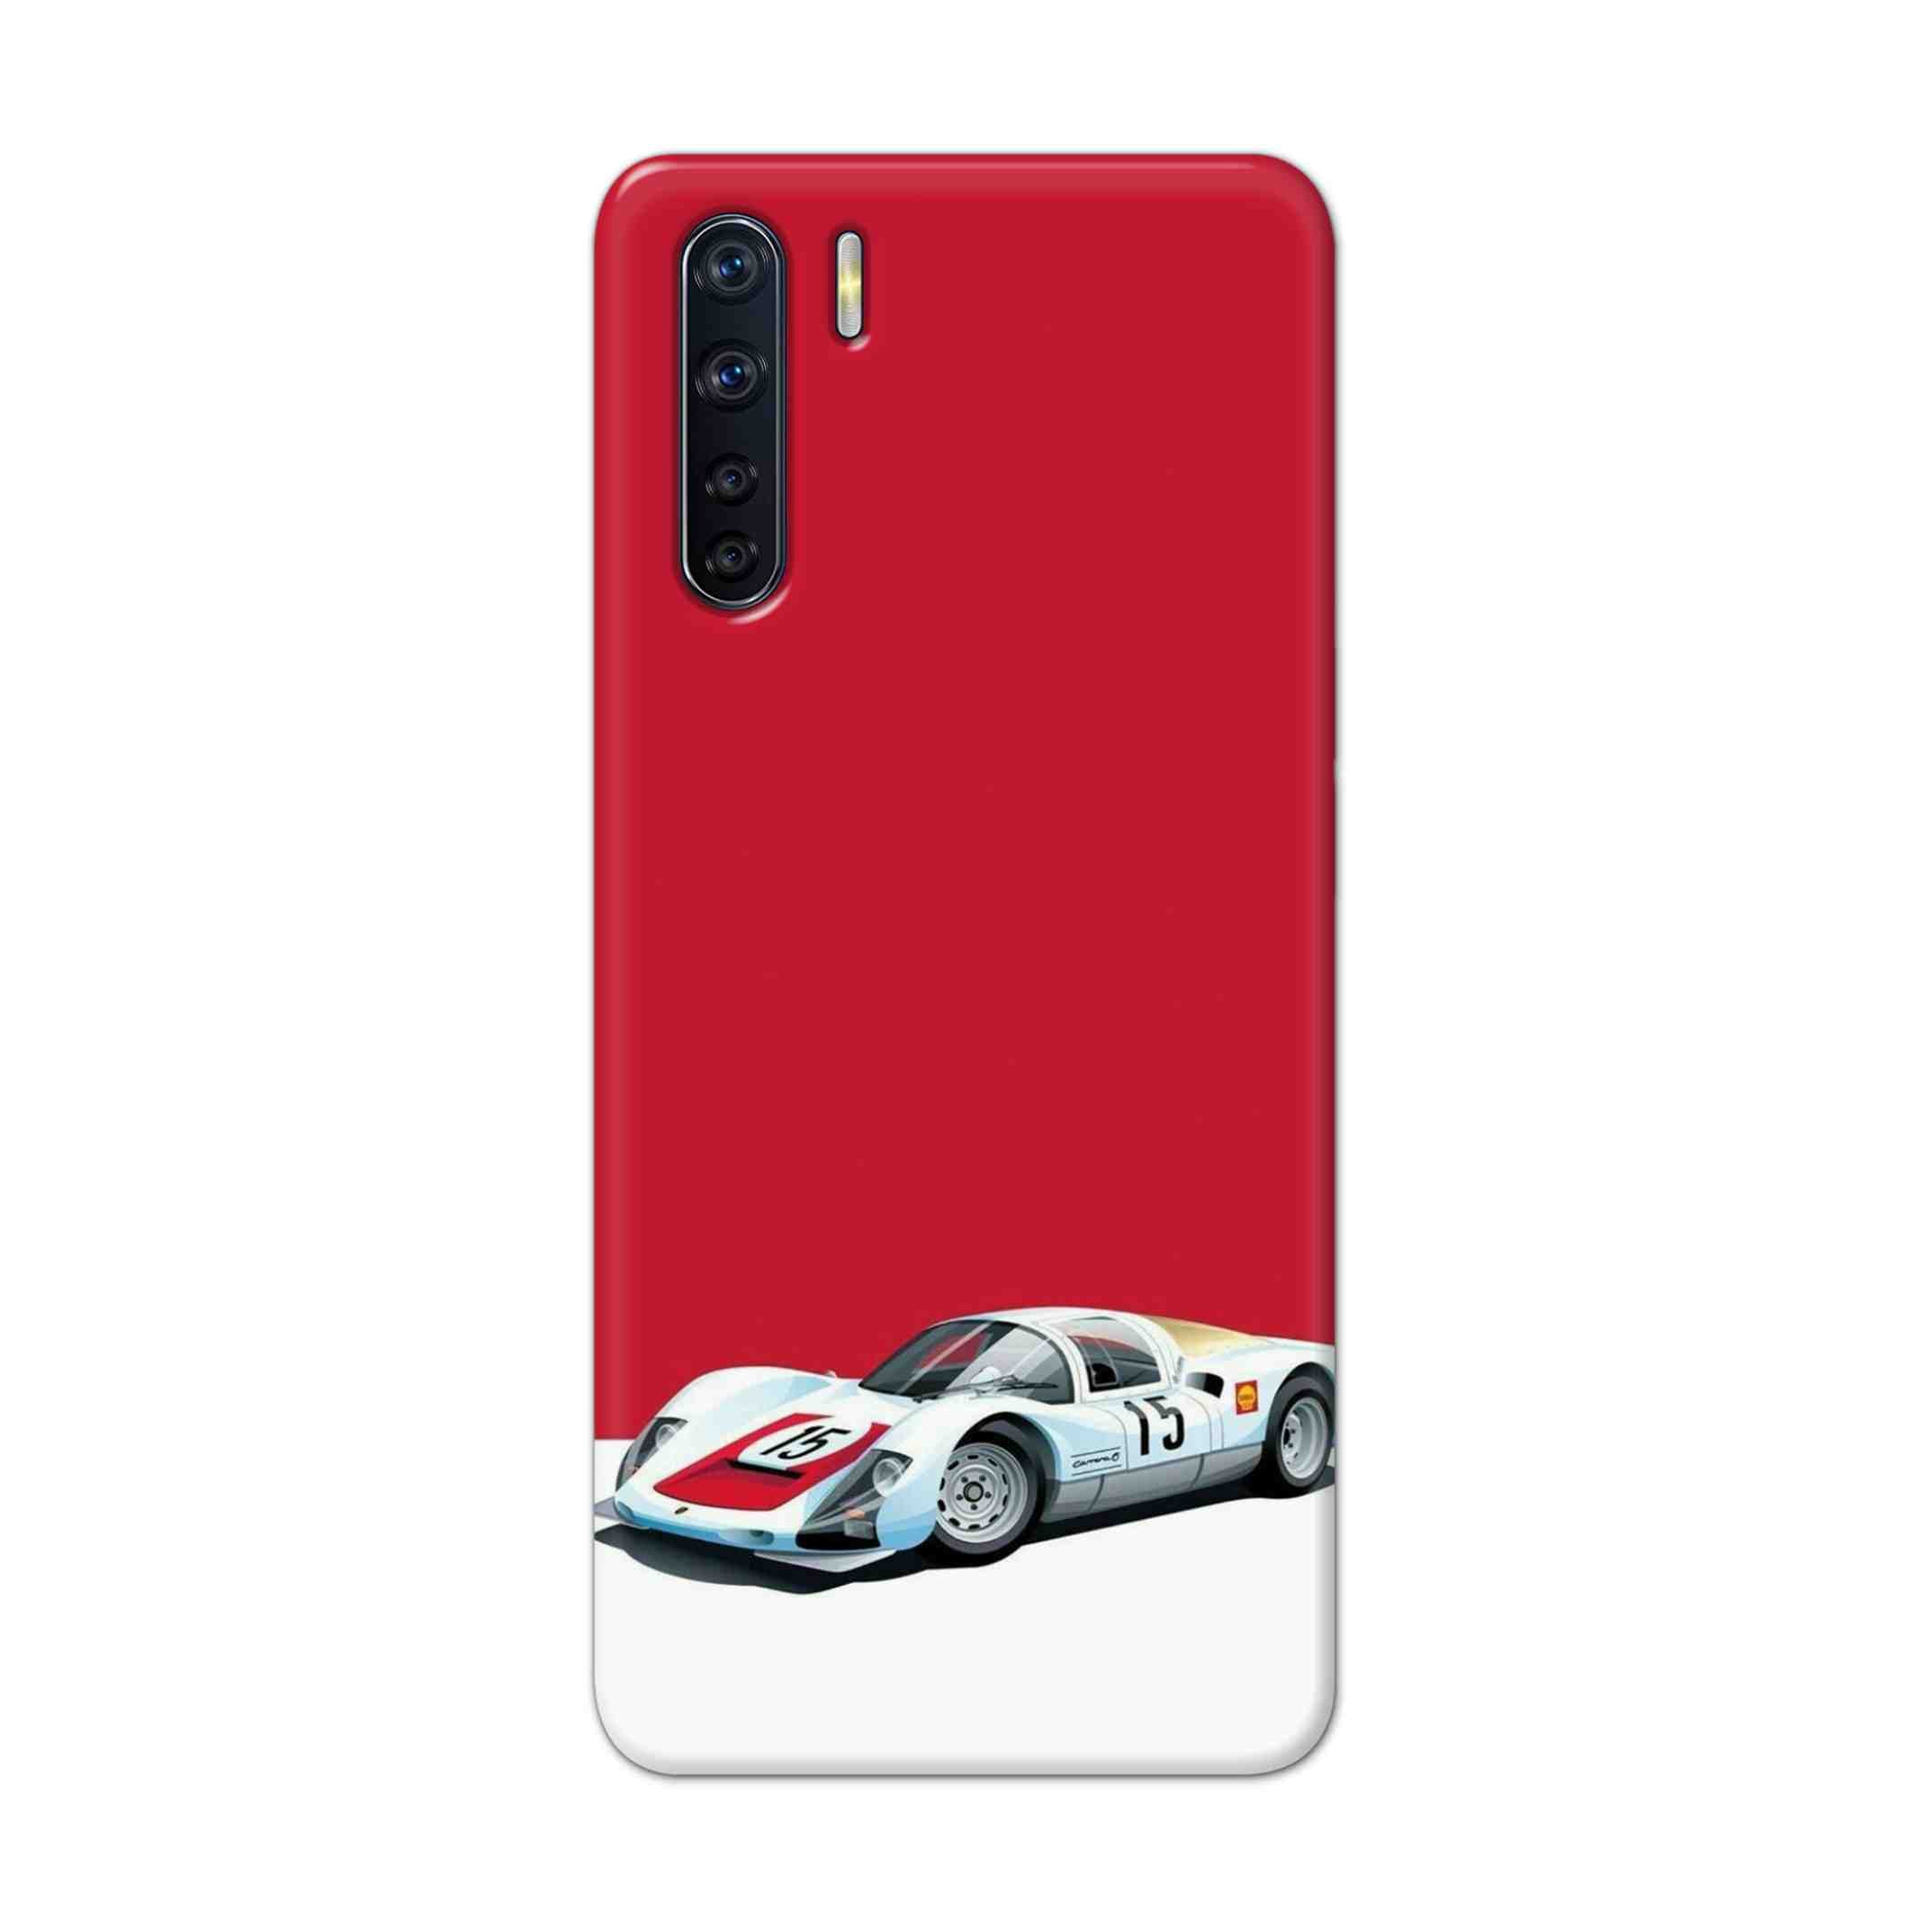 Buy Ferrari F15 Hard Back Mobile Phone Case Cover For OPPO F15 Online